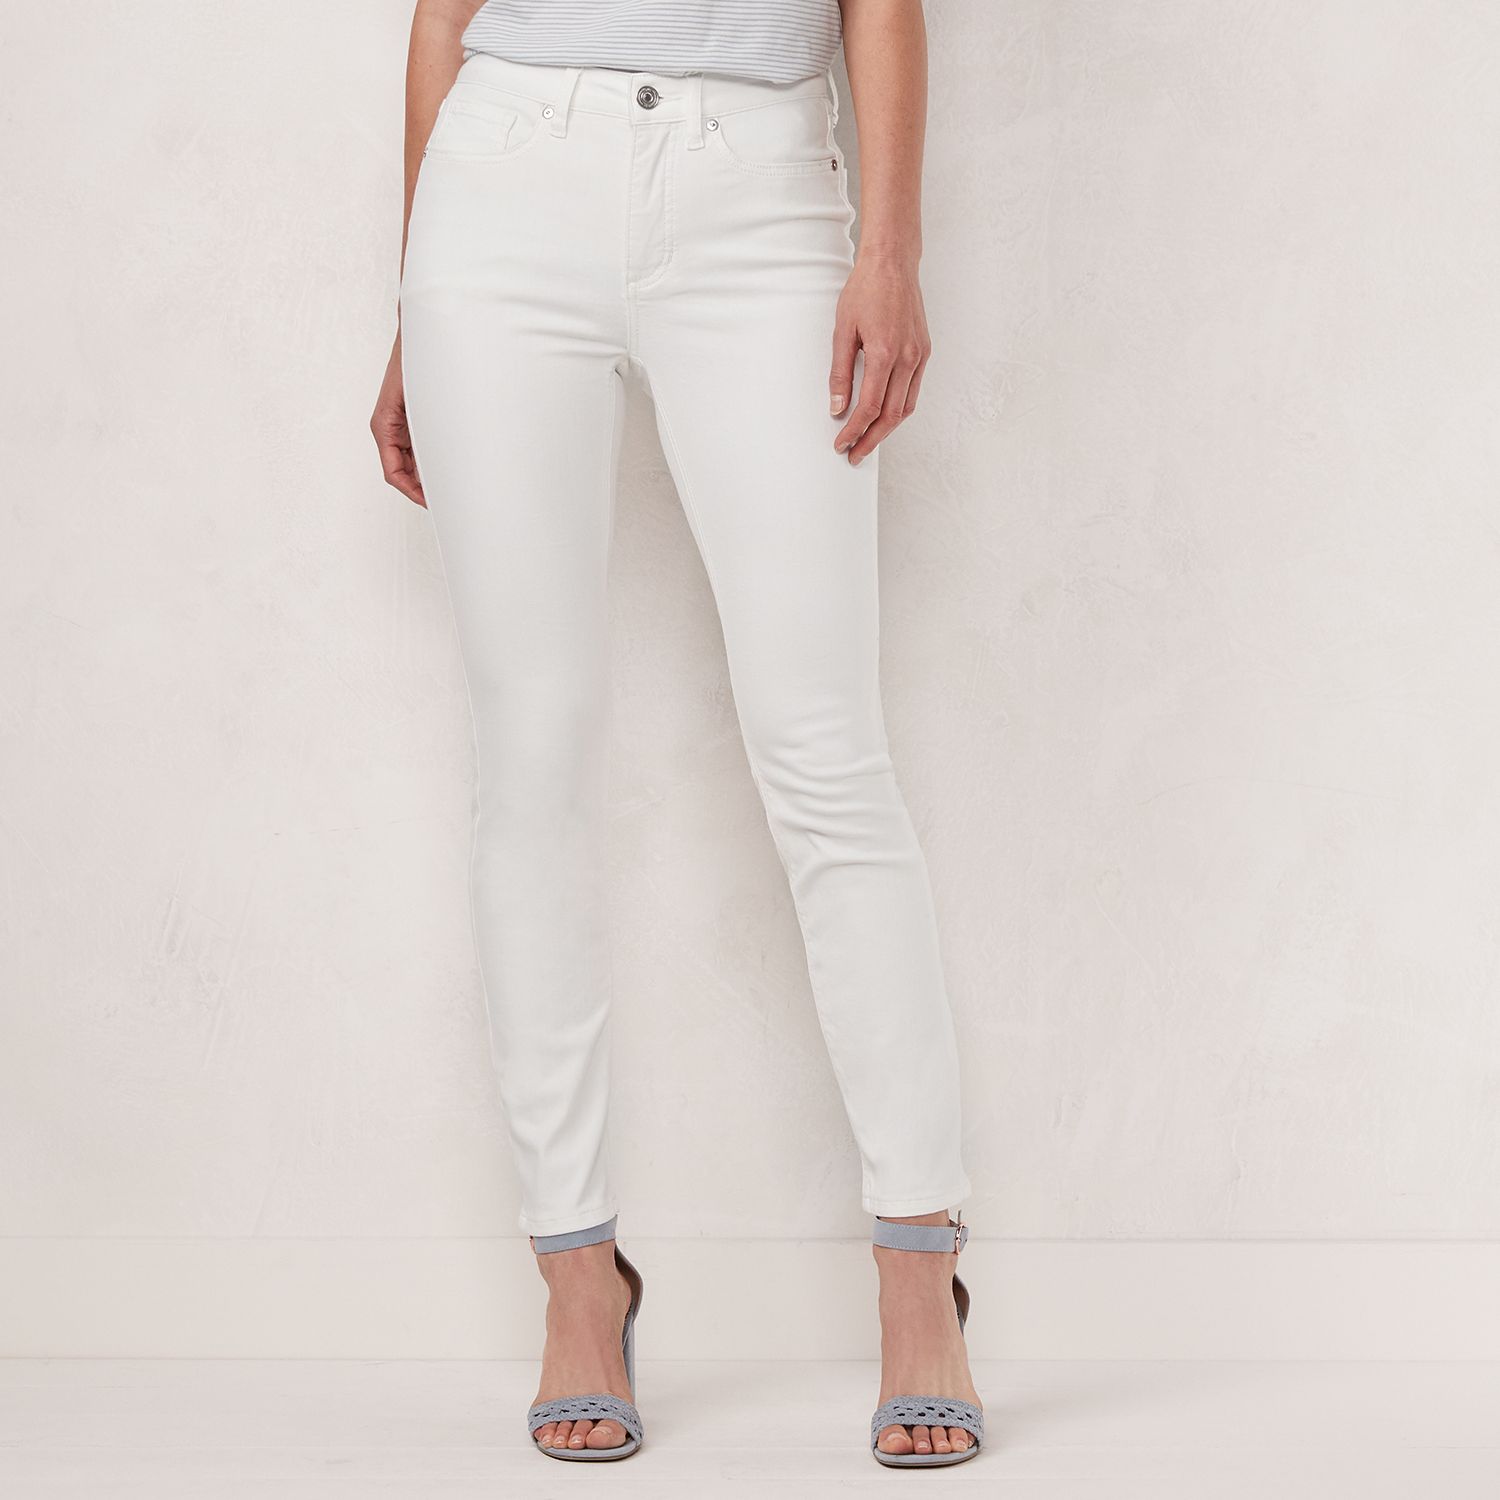 kohls womens white jeans